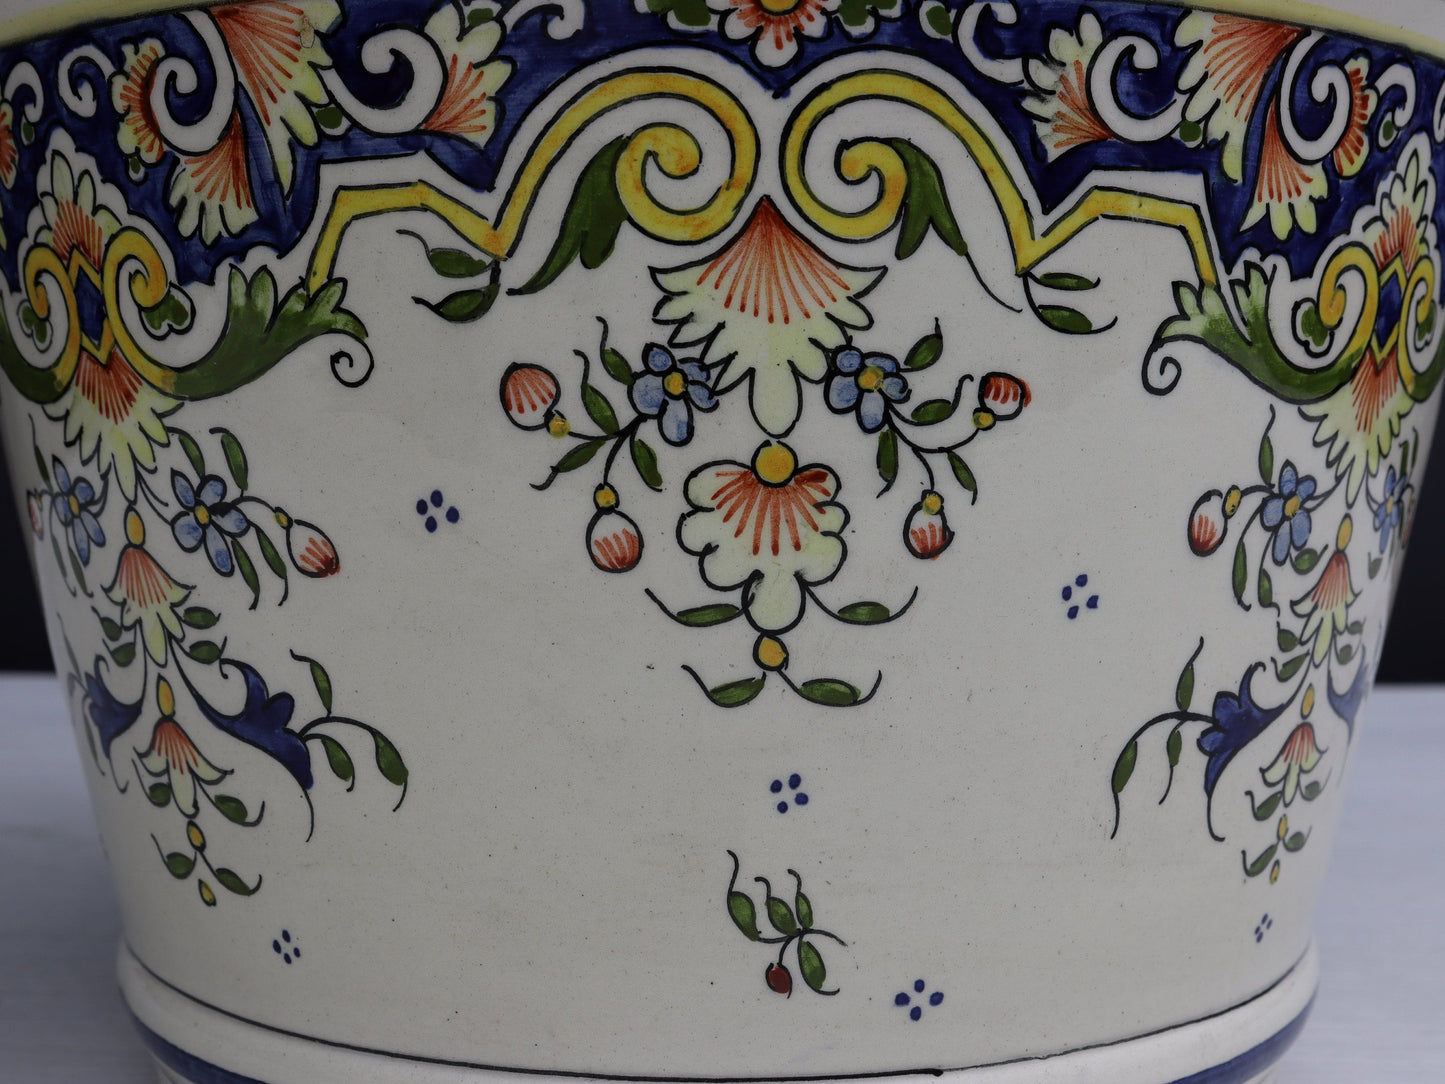 Ceramic Plant Pot-French Decor | Hand Painted-Indoor Plant Pot |Decorative Planter-Vintage Home decor